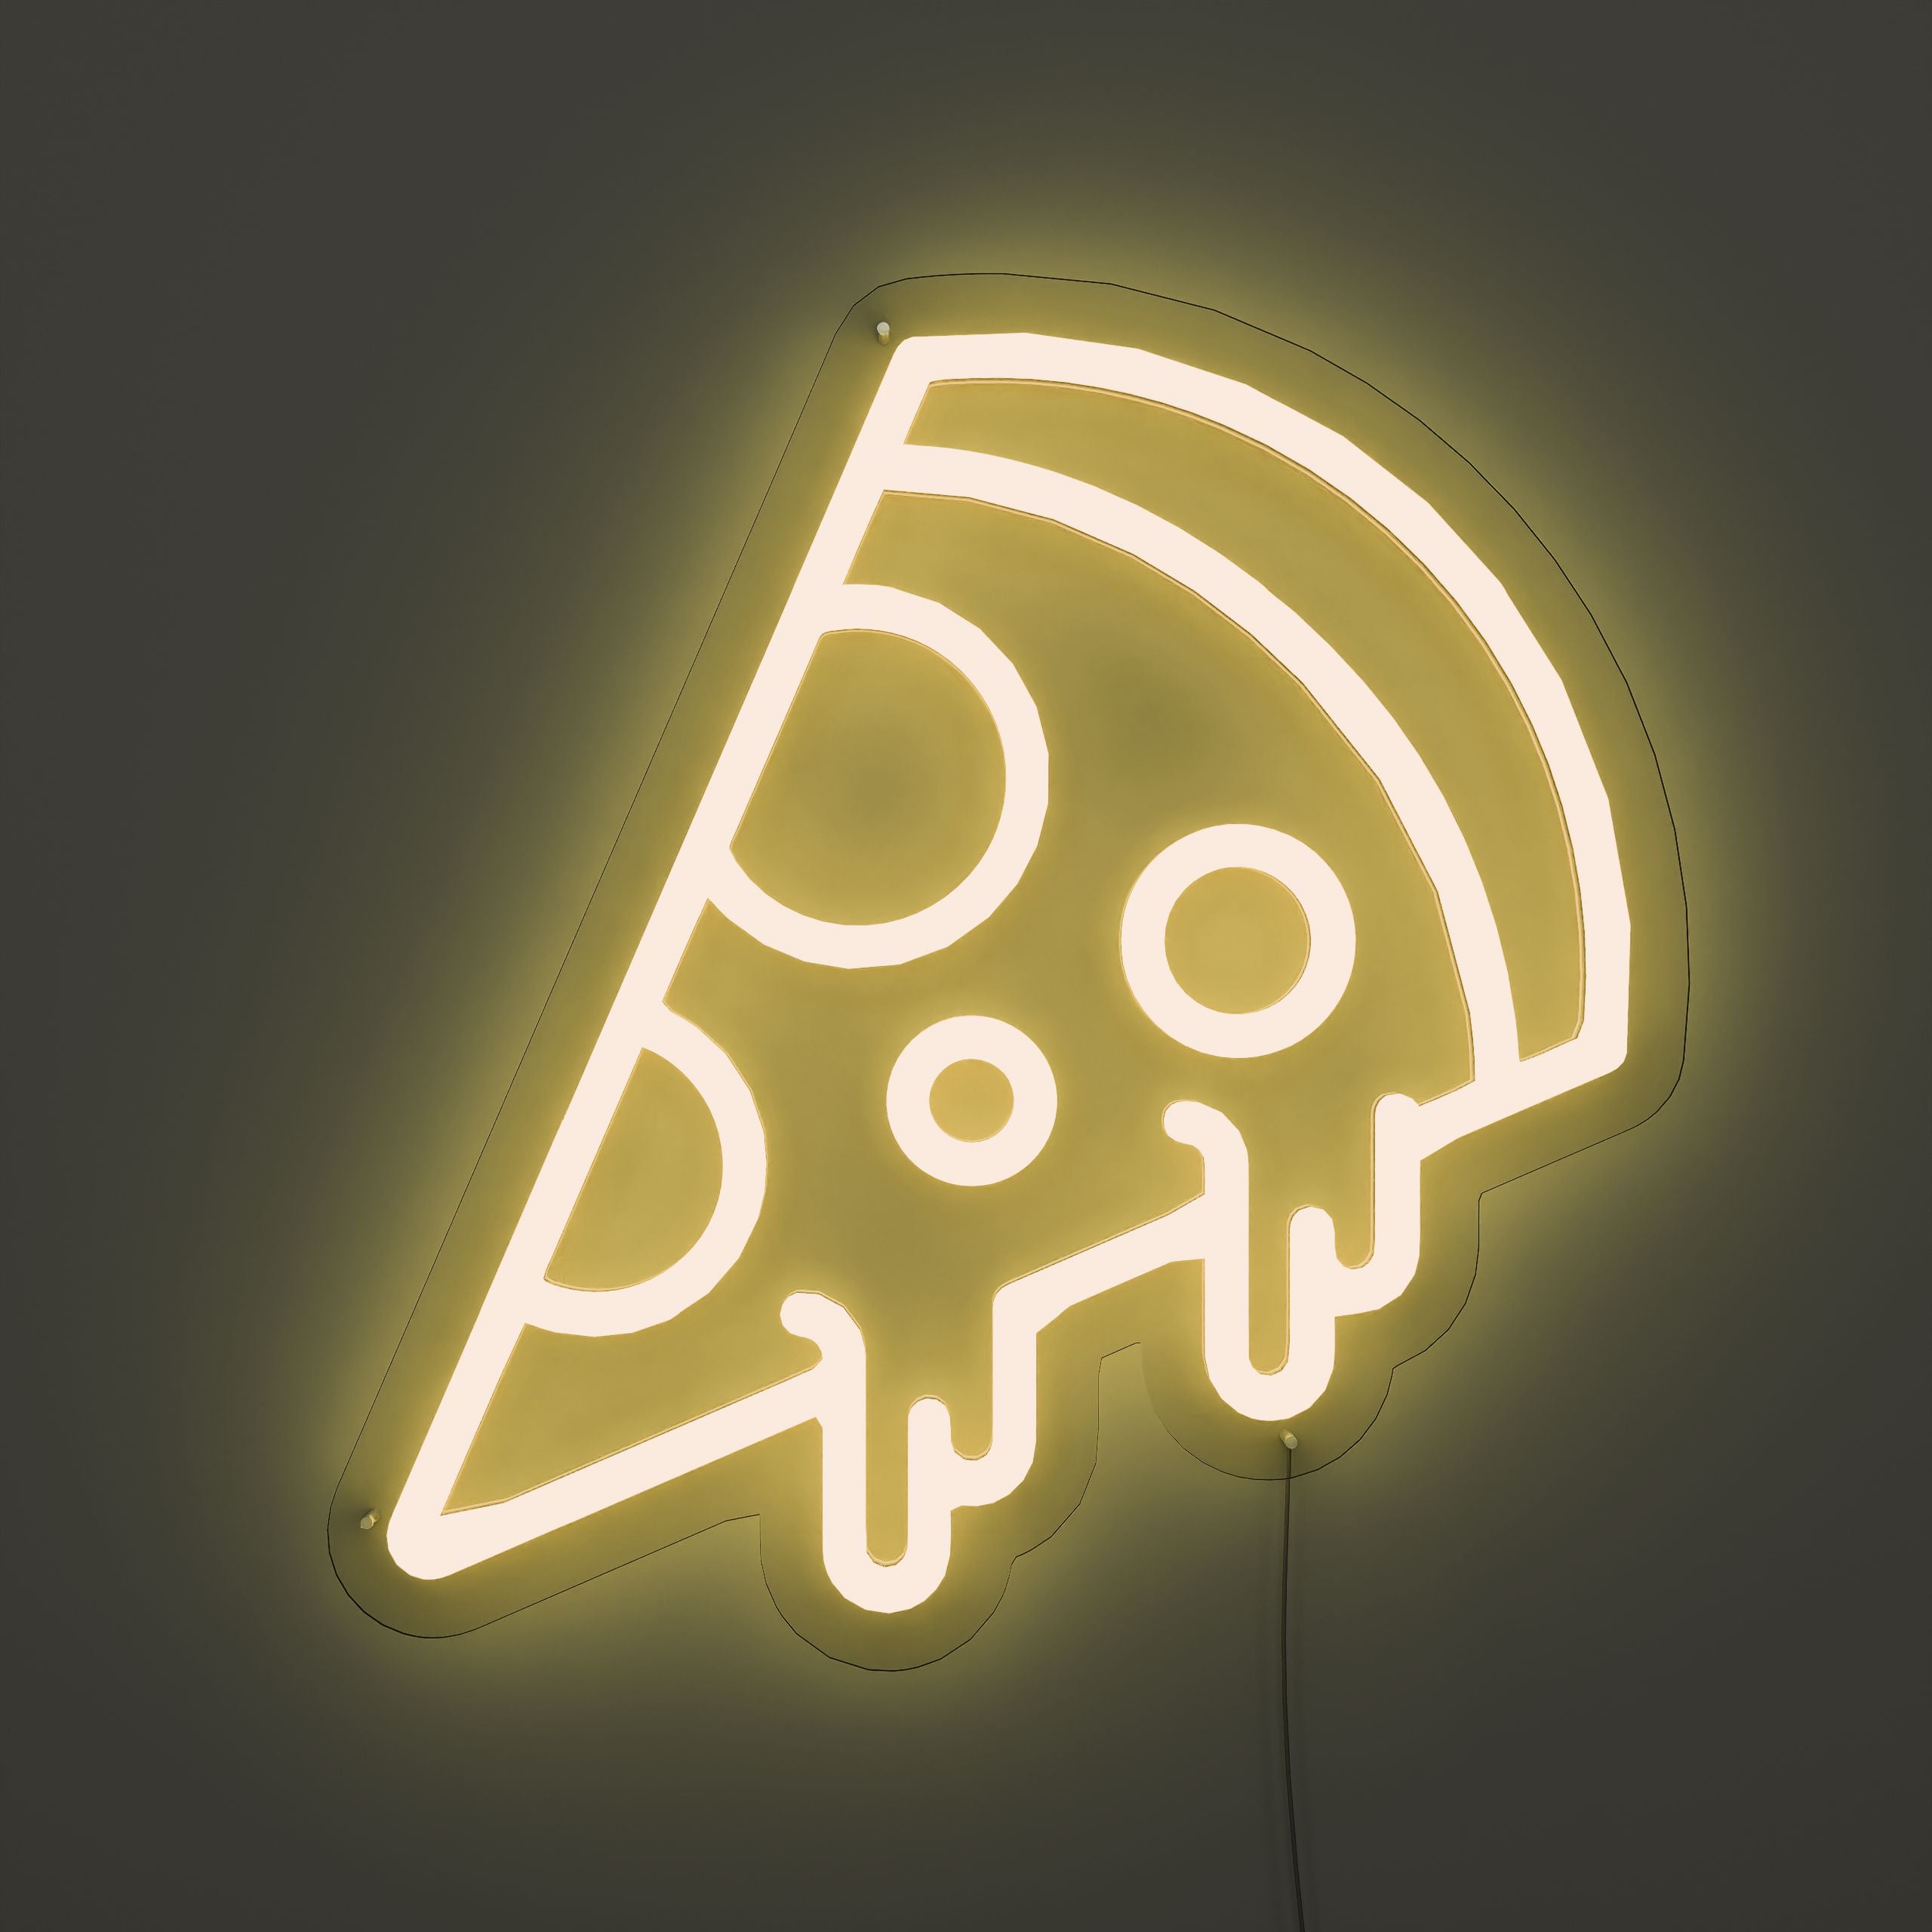 Delicious-Pizza-Pie-Neon-Sign-Lite